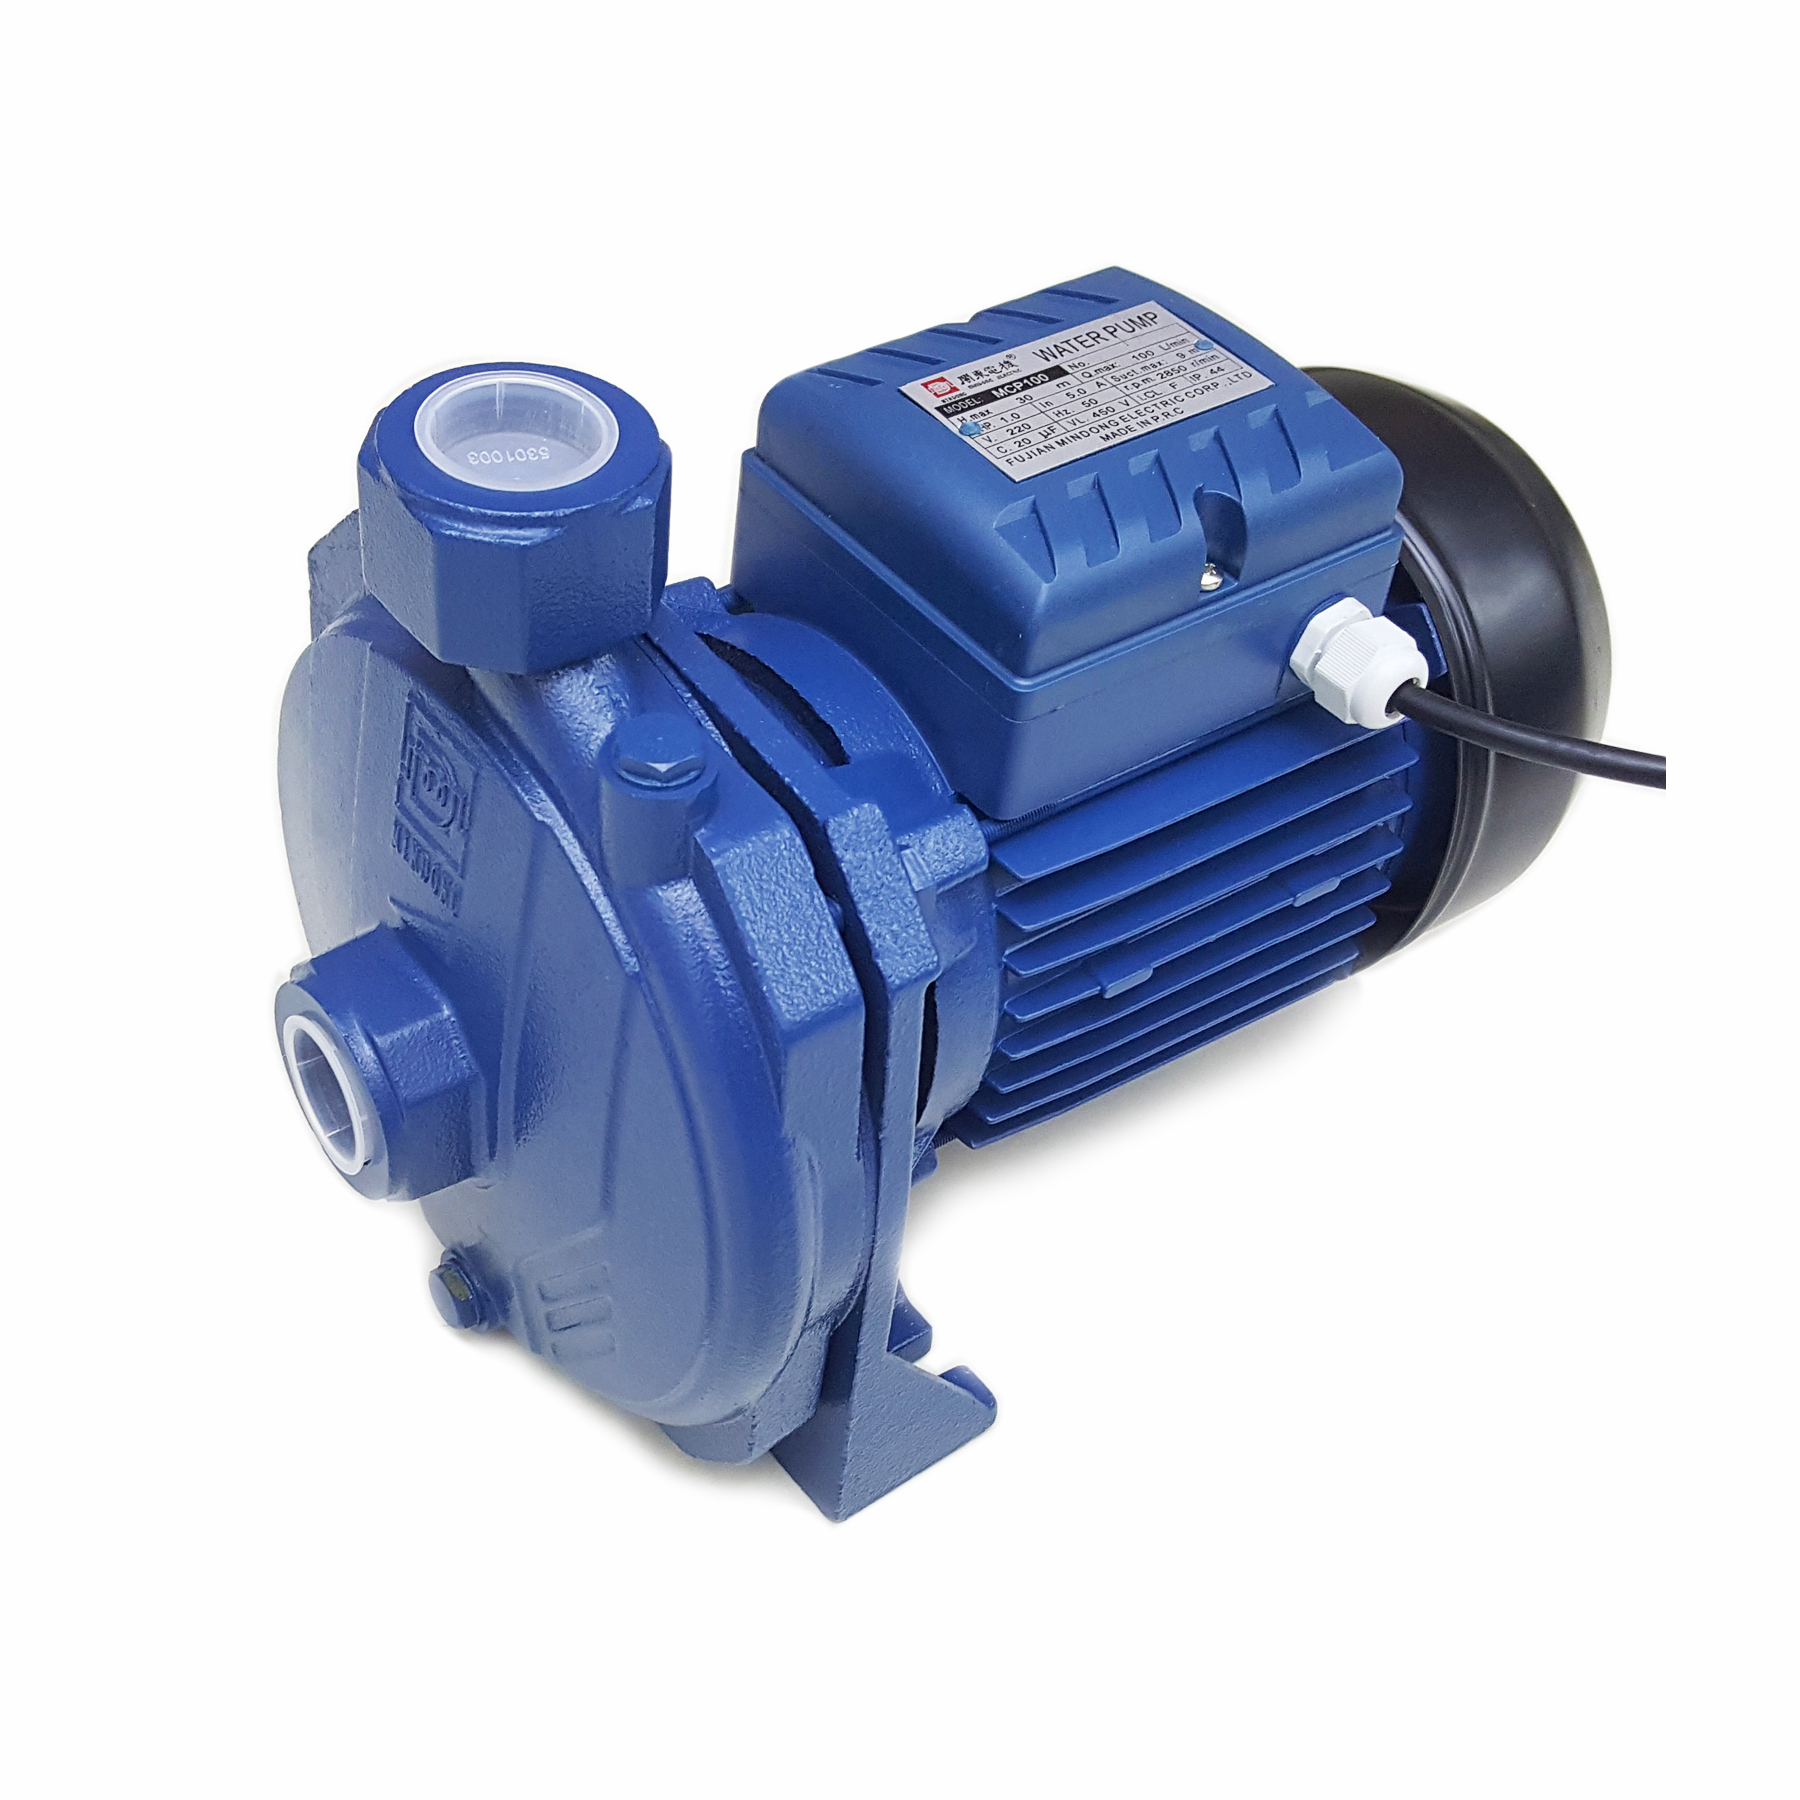 MCP100 centrifugal pump